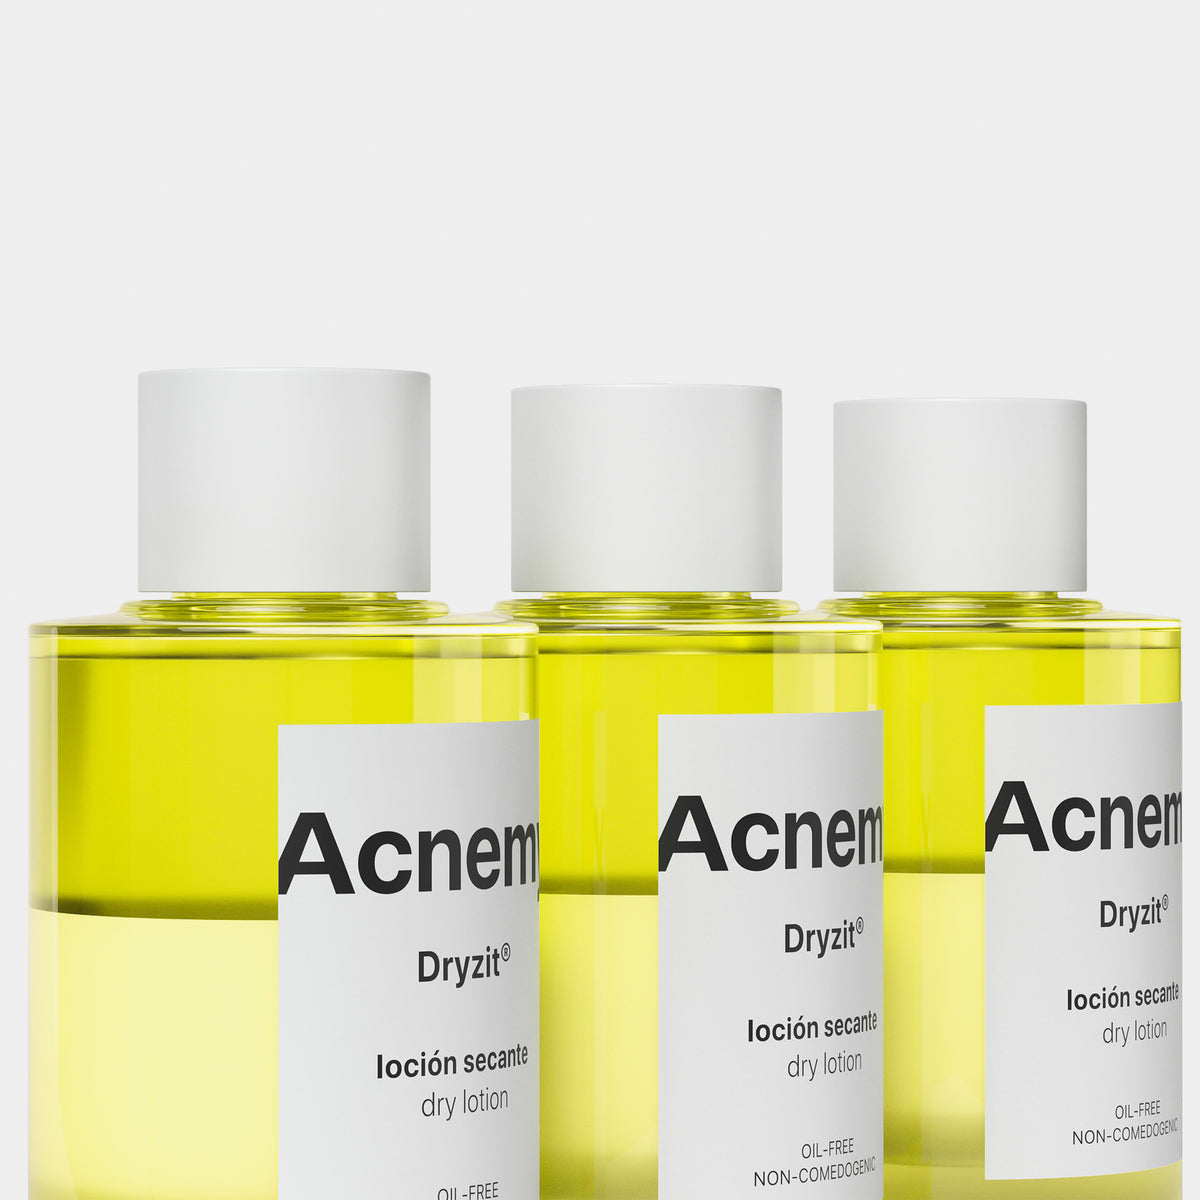 Drei Flaschen Acnemy Dryzit® vor weißem Hintergrund